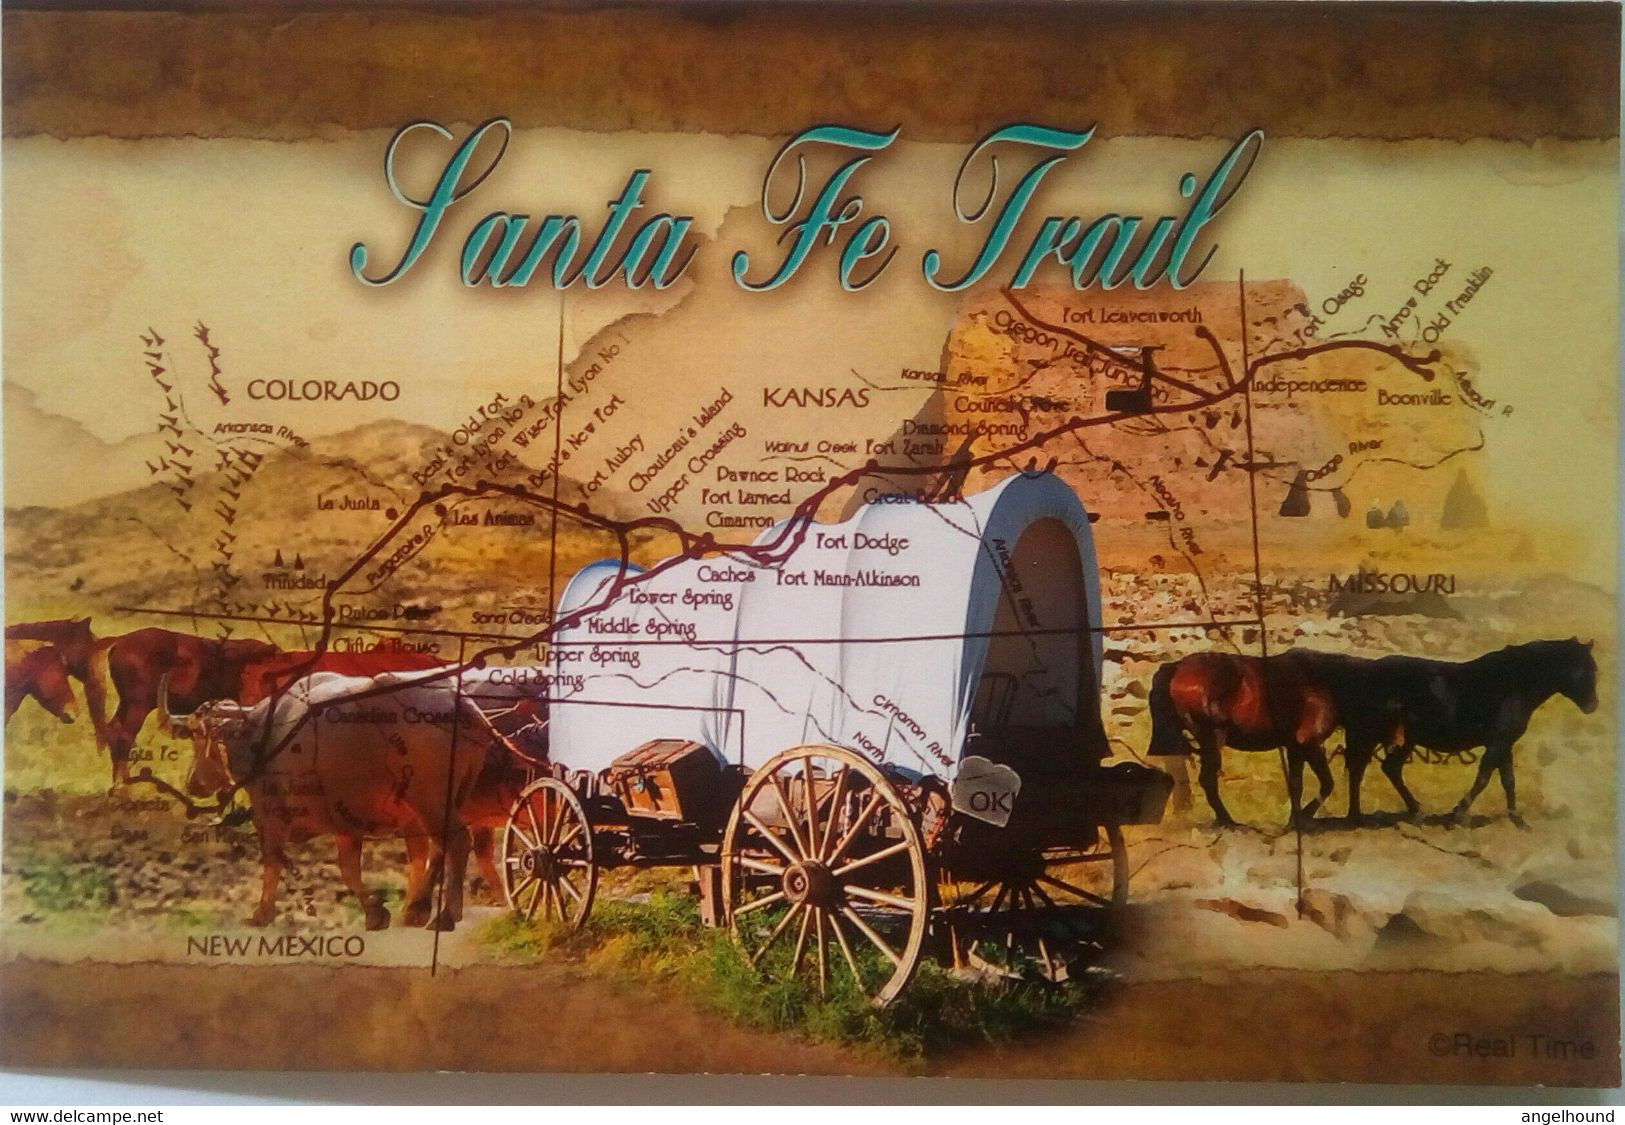 Santa Fe Trail - Kansas City – Kansas